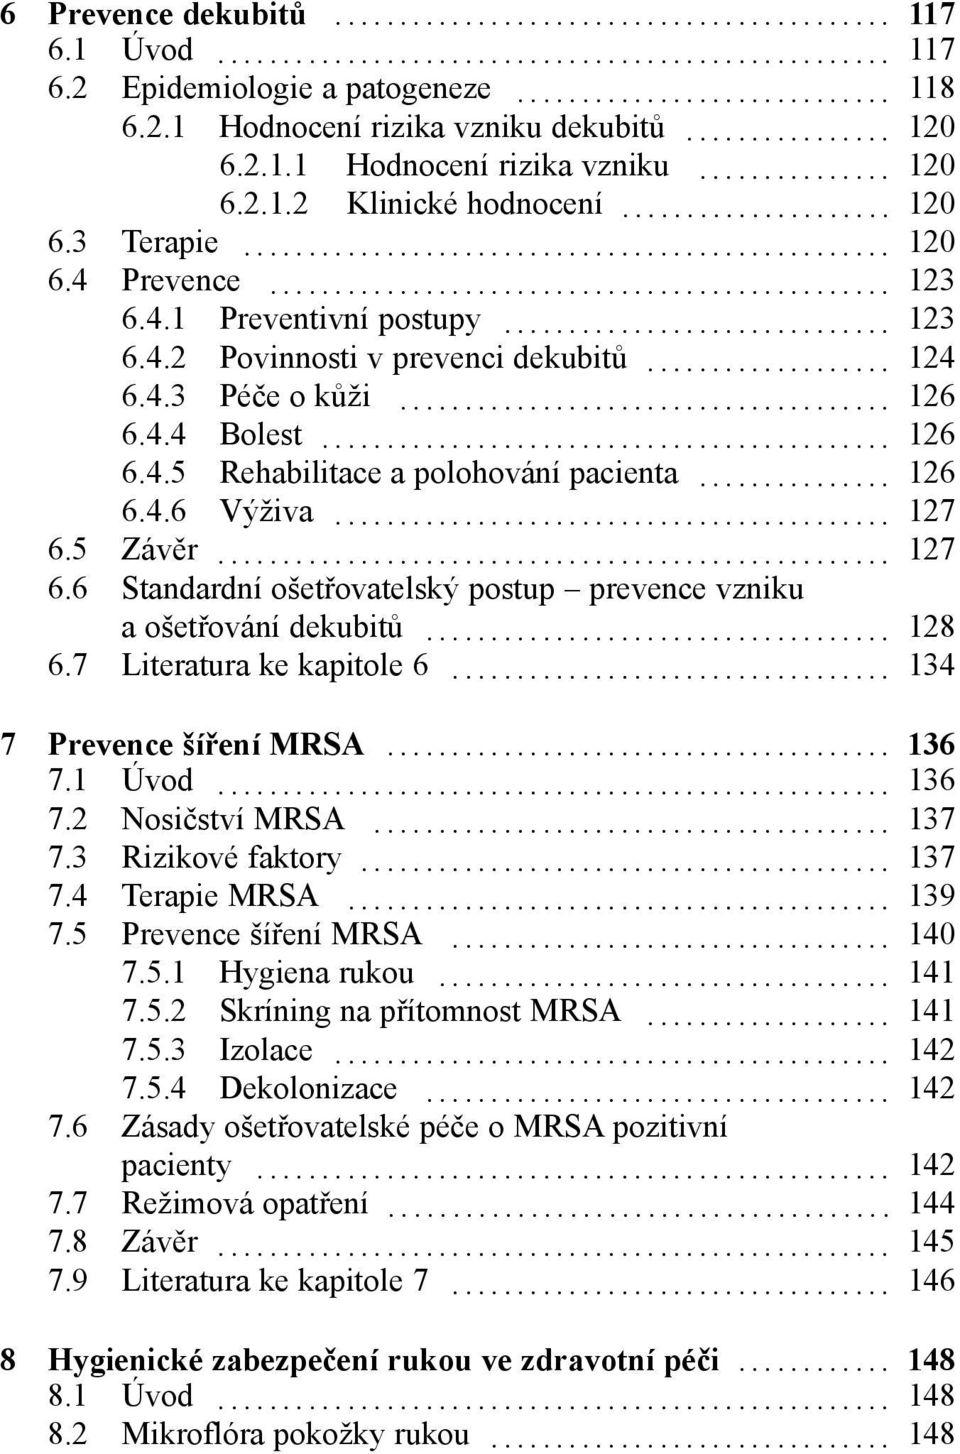 .. 127 6.5 Závěr... 127 6.6 Standardní ošetřovatelský postup prevence vzniku a ošetřování dekubitů... 128 6.7 Literatura ke kapitole 6... 134 7 Prevence šíření MRSA... 136 7.1 Úvod... 136 7.2 Nosičství MRSA.